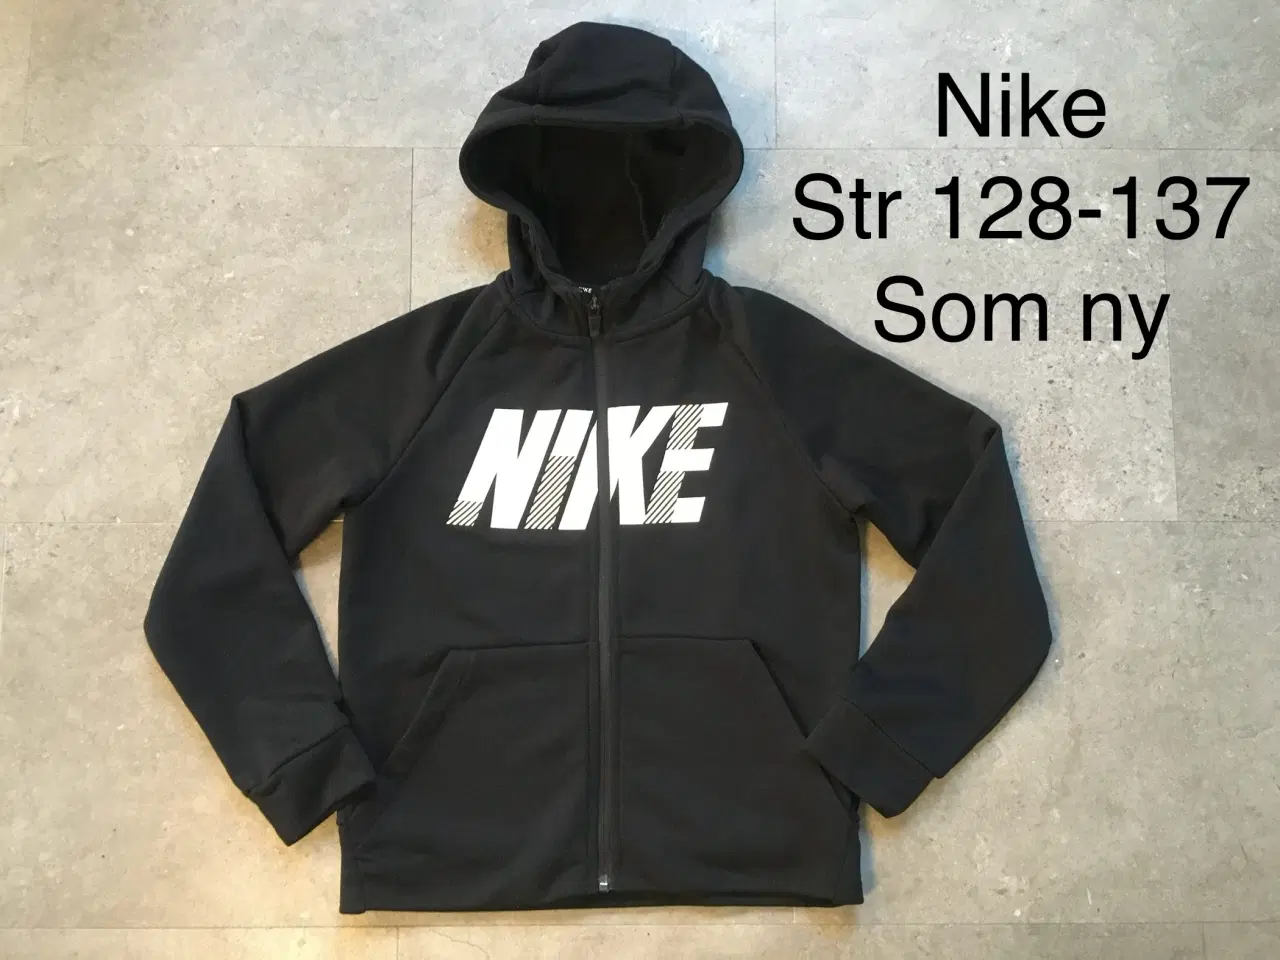 Billede 1 - Str 128-137 Nike trøje med lynlås. Som ny